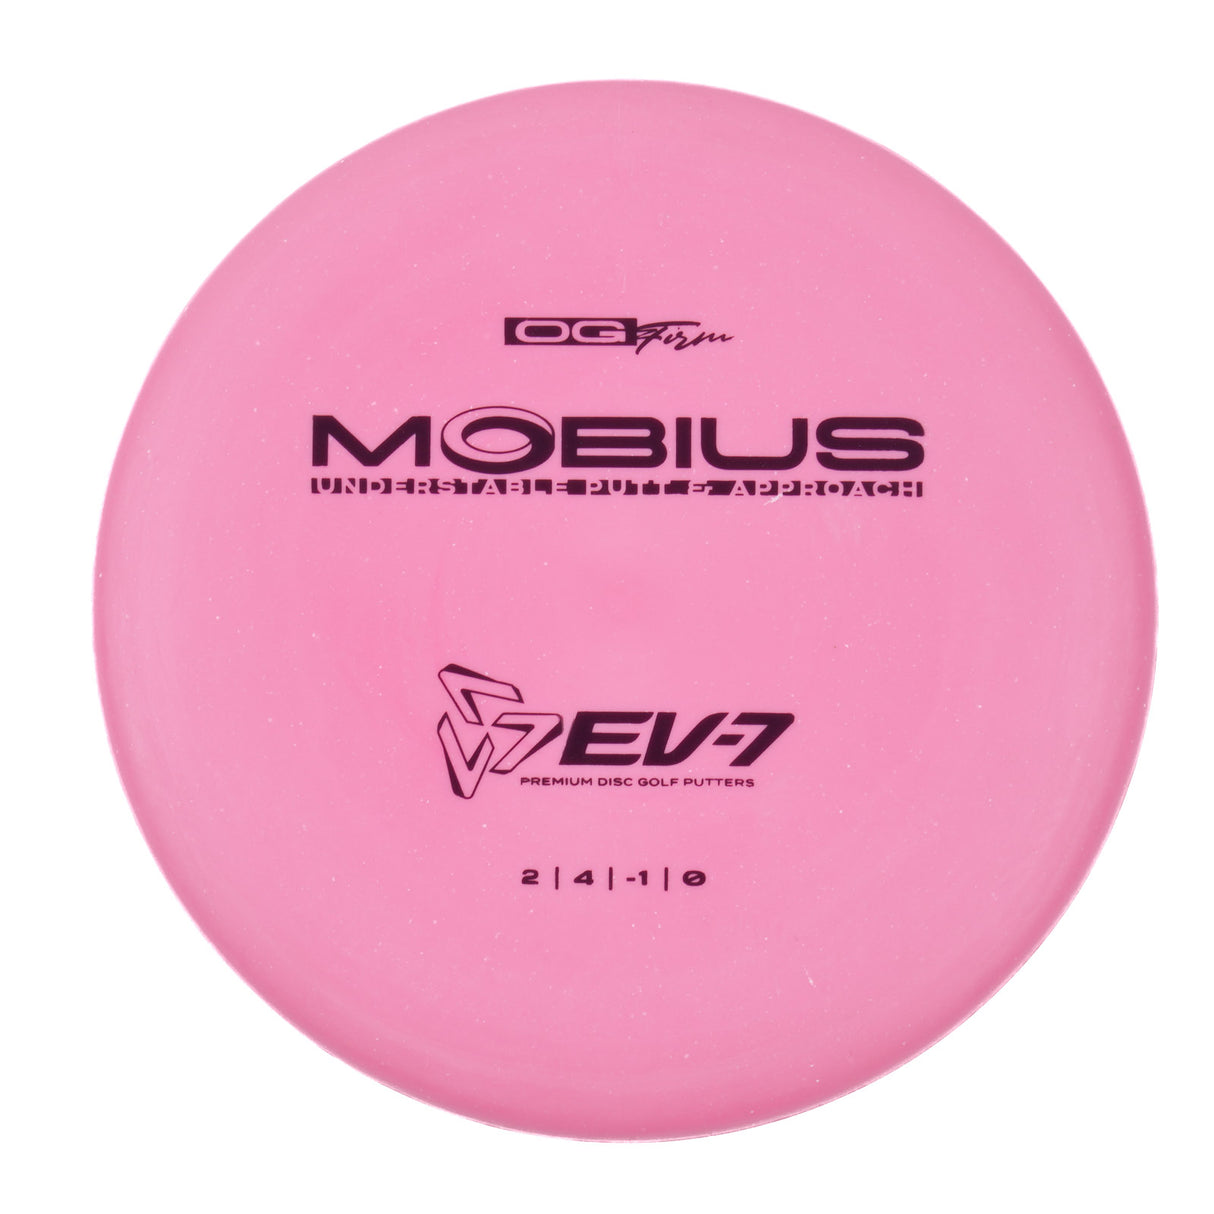 EV-7 Möbius - OG Firm 174g | Style 0001